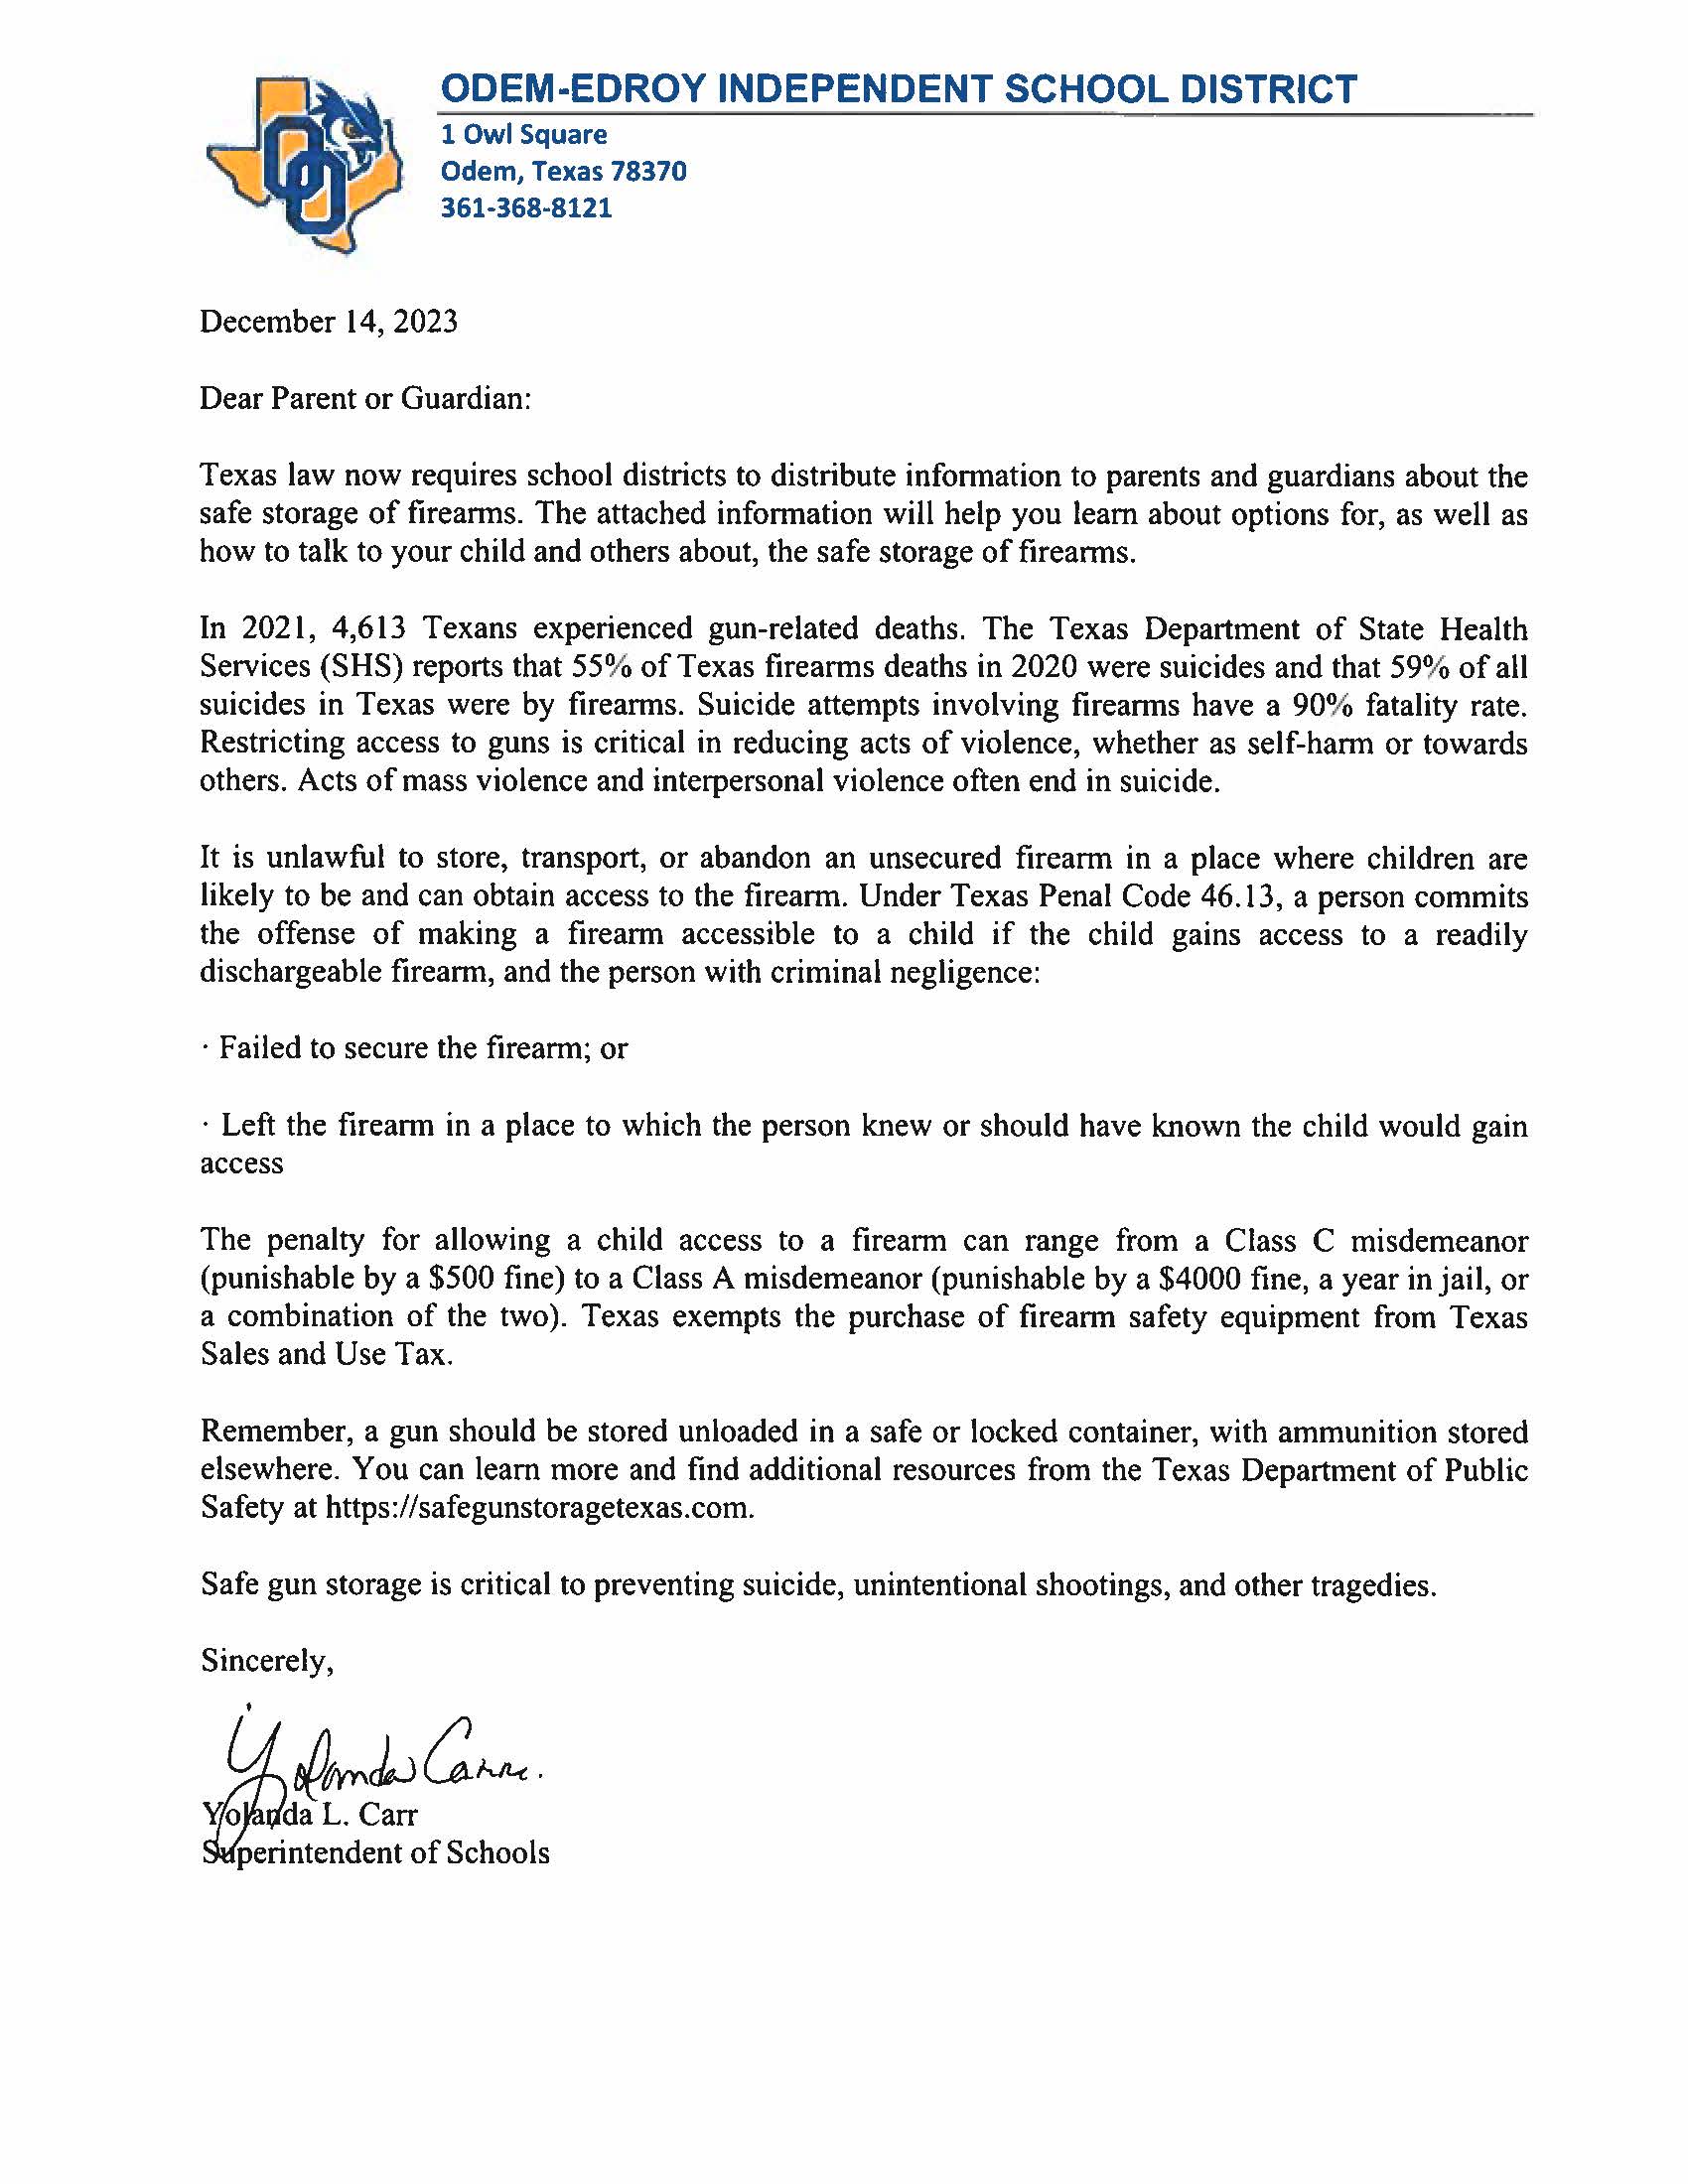 Superintendent Safe Gun Storage Letter